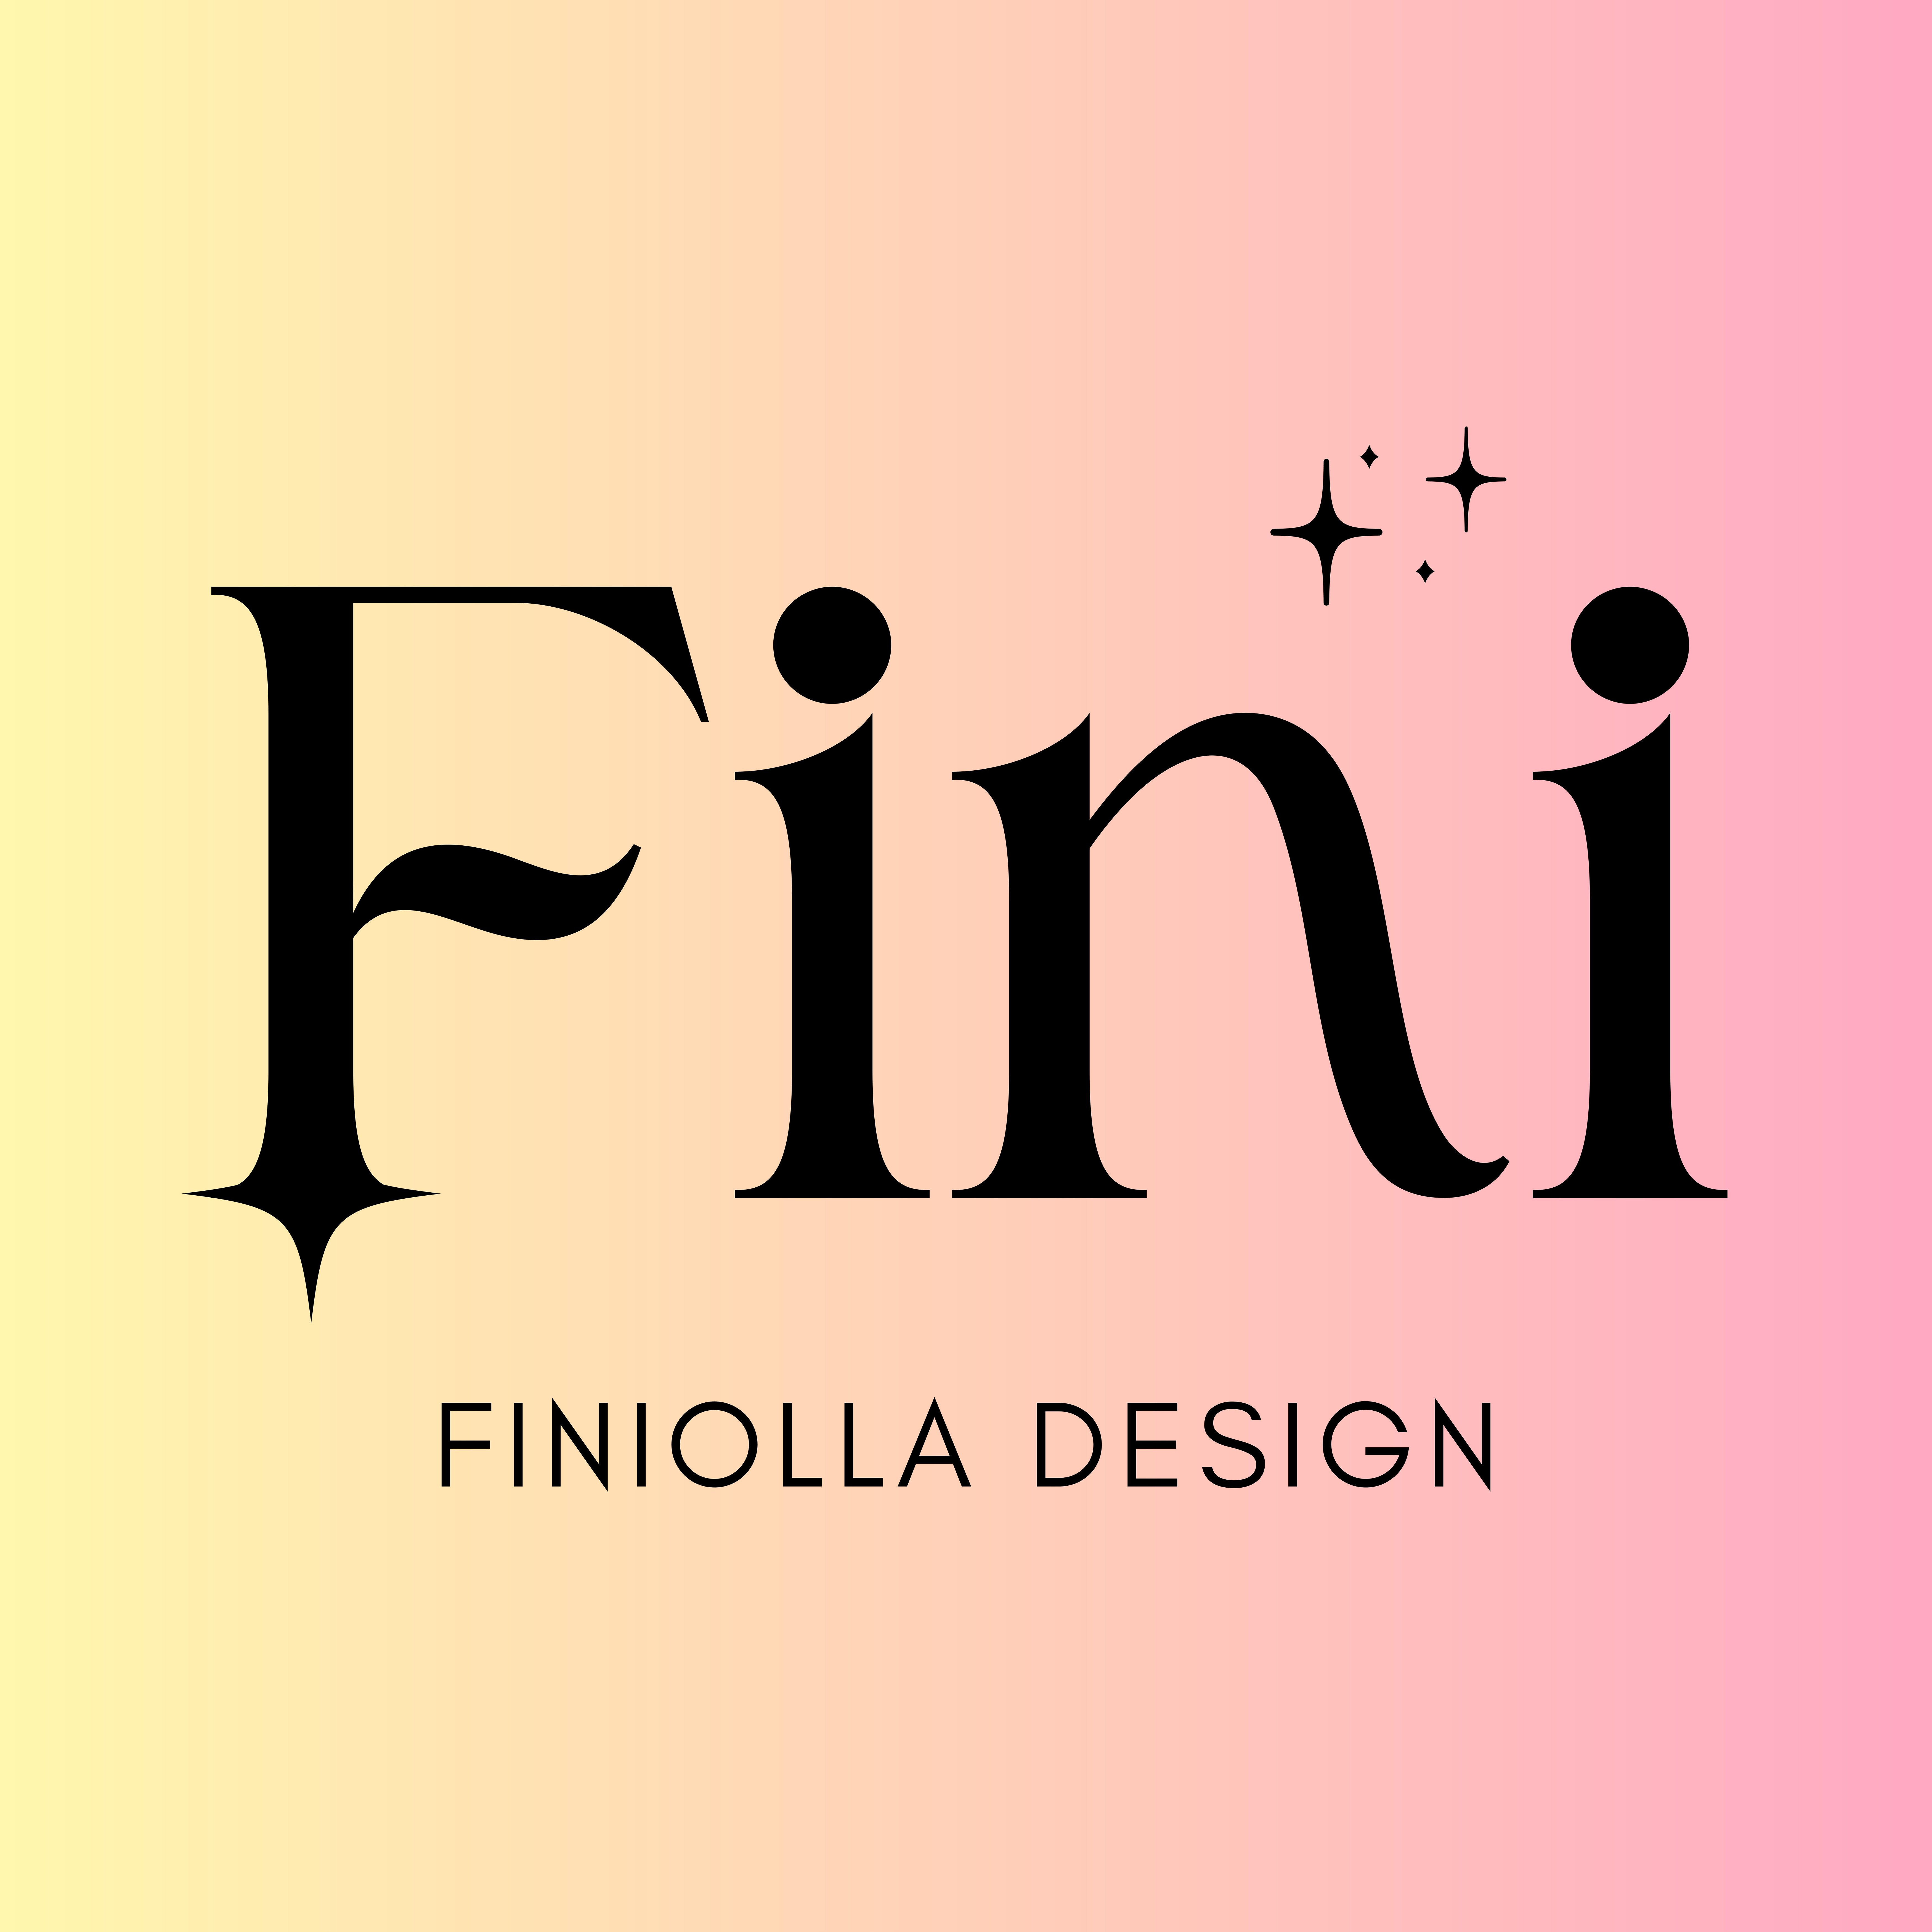 Finiolla Design's profile picture